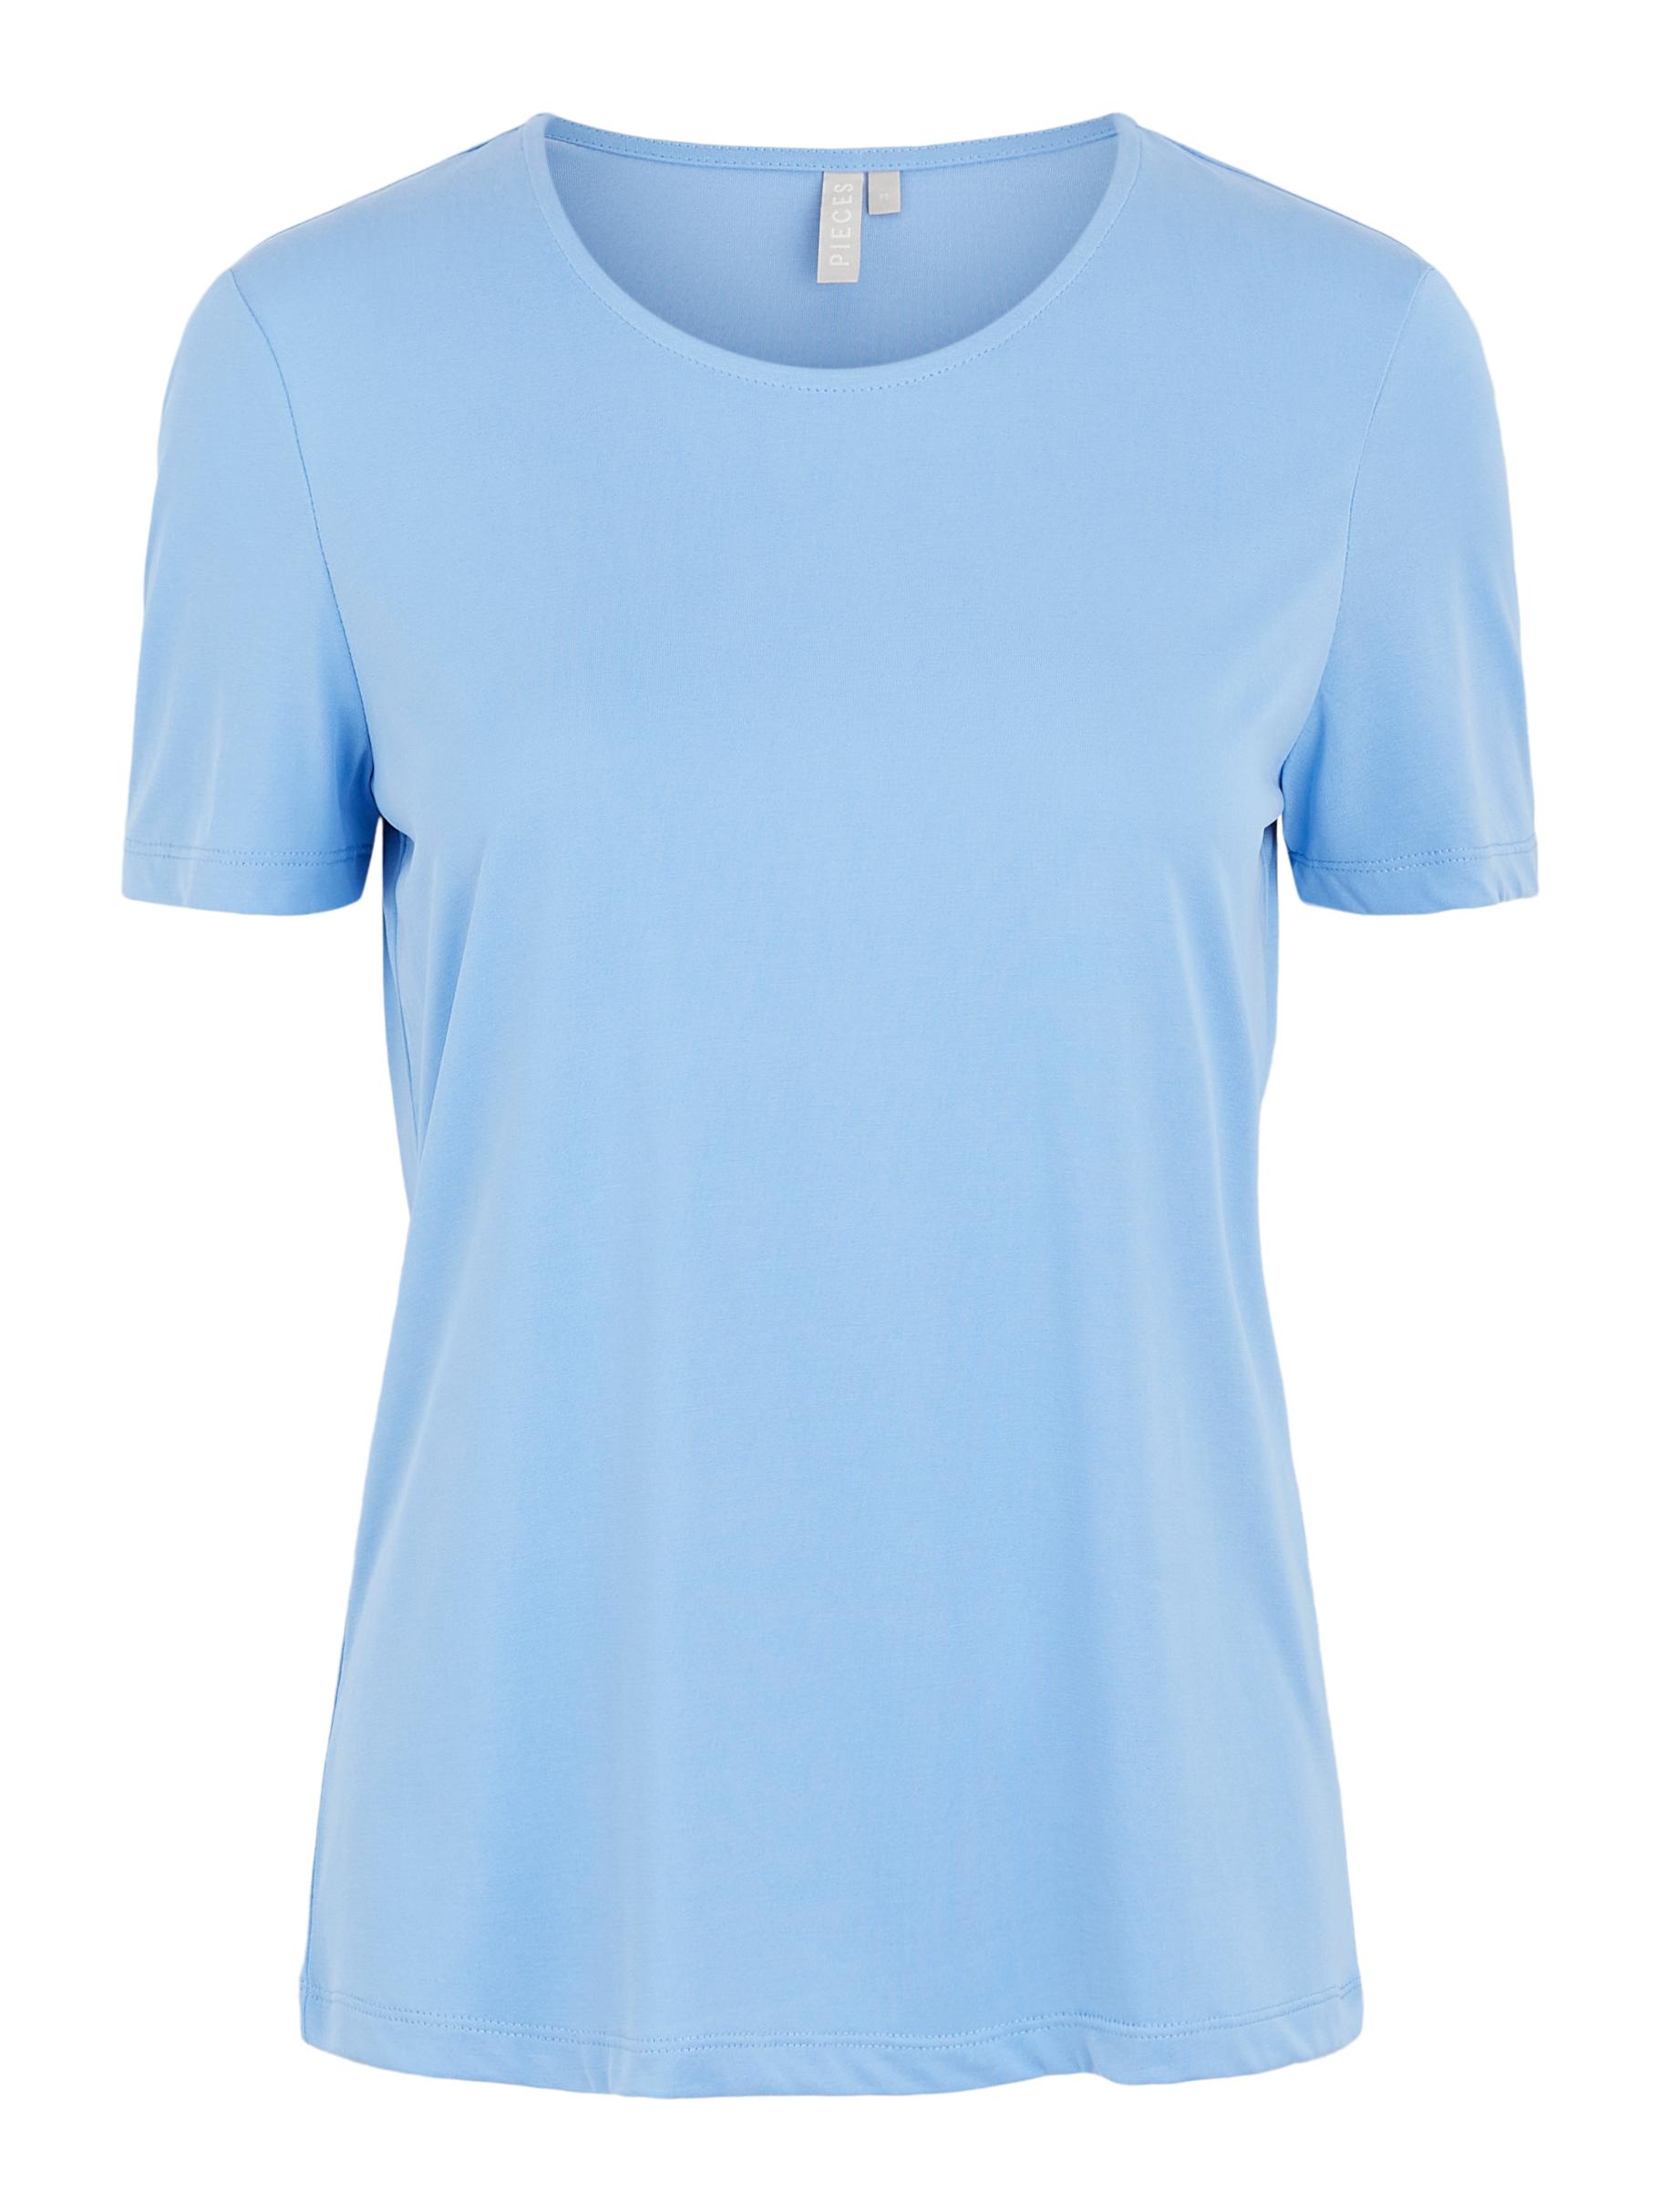 Odzież Kobiety PIECES Koszulka KAMALA w kolorze Błękitnym 